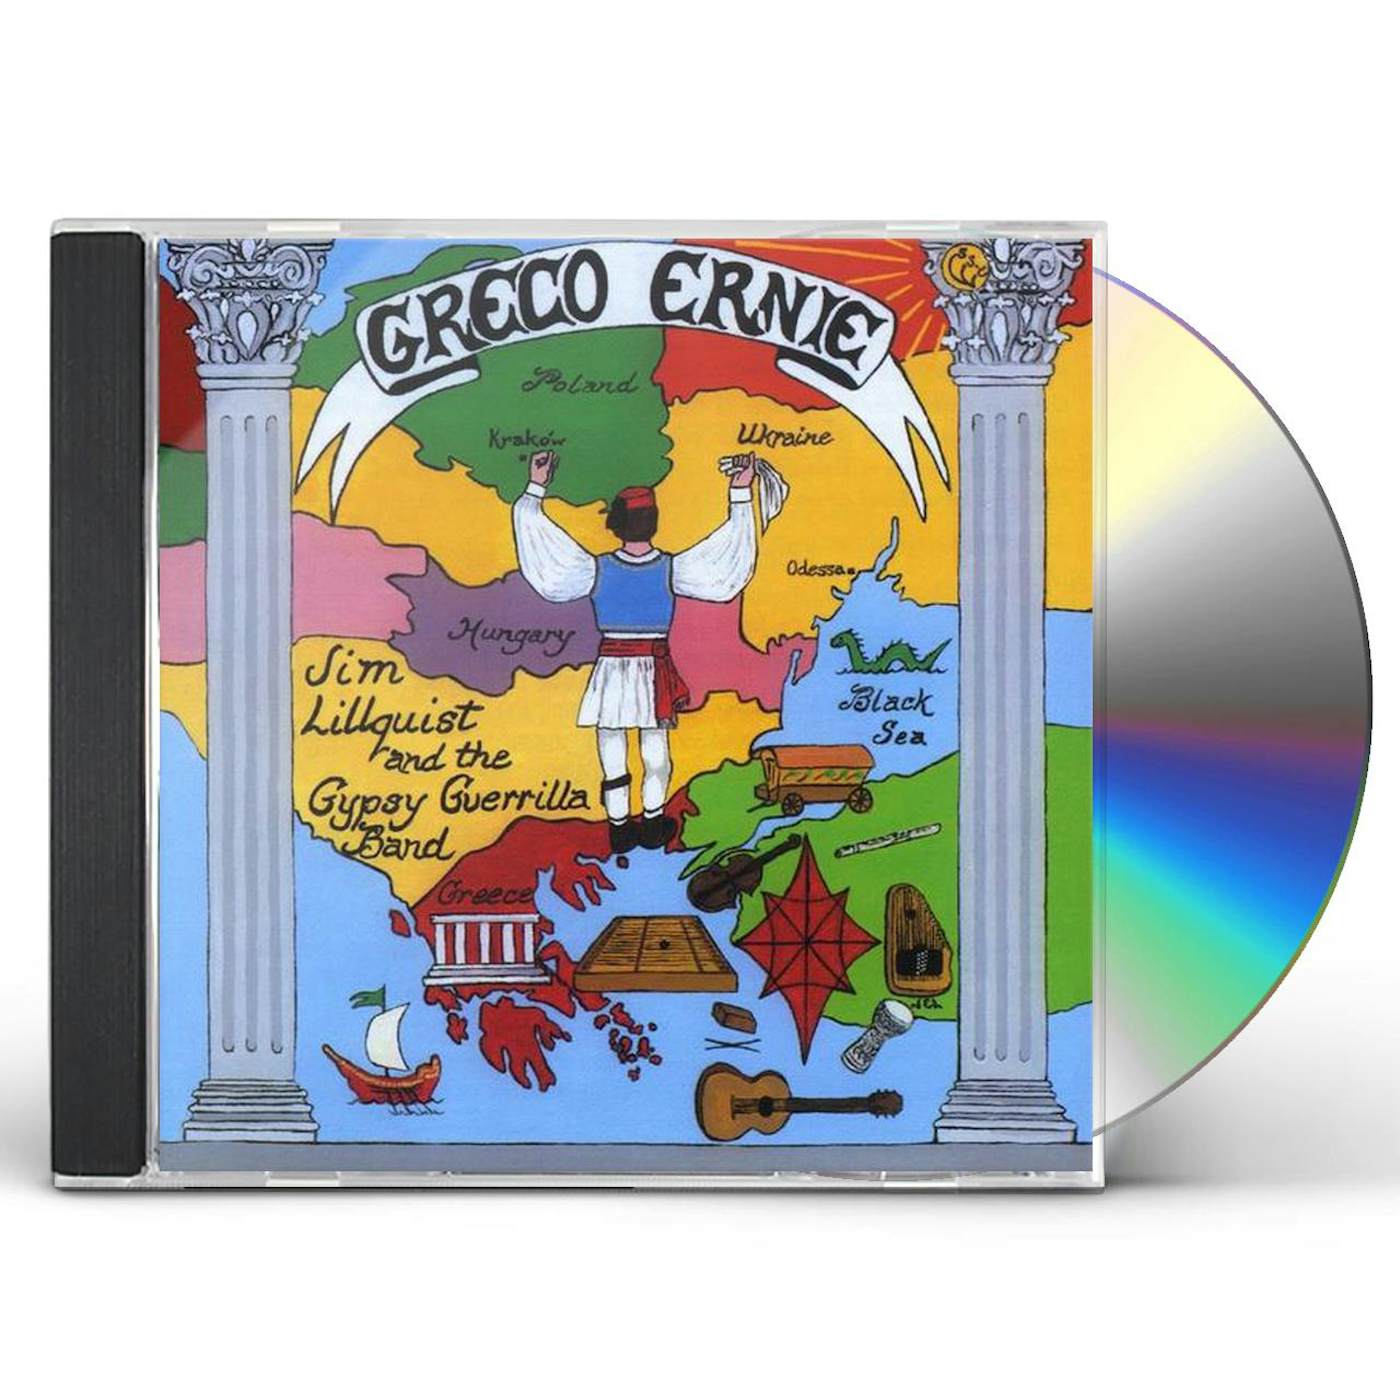 Gypsy Guerrilla Band GRECO ERNIE CD